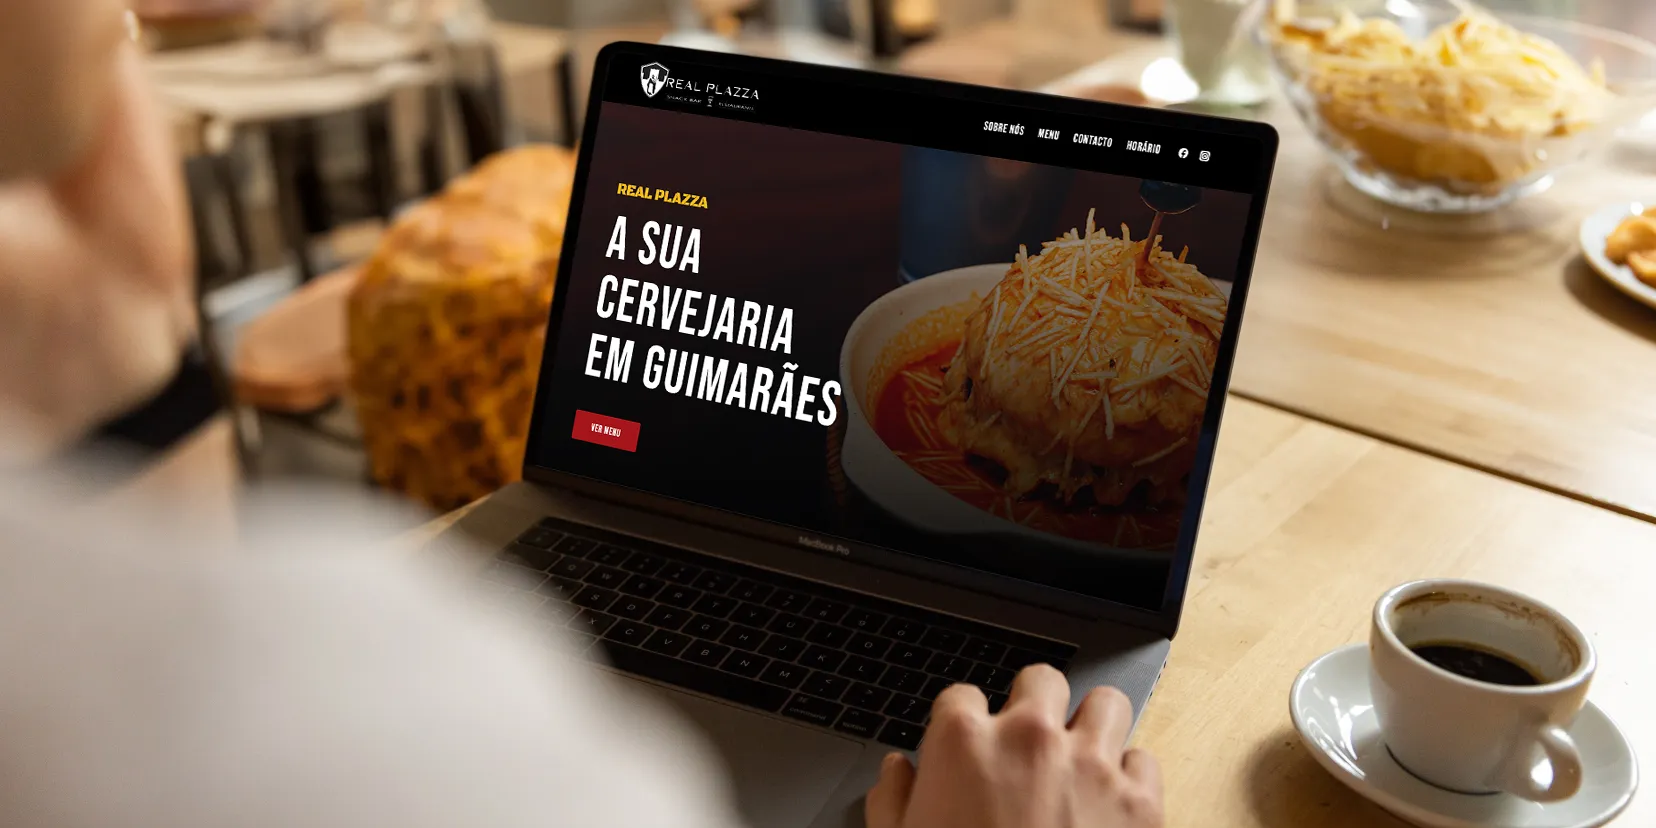 Web Design em Guimarães - Website do Real Plazza criado pela BEHS